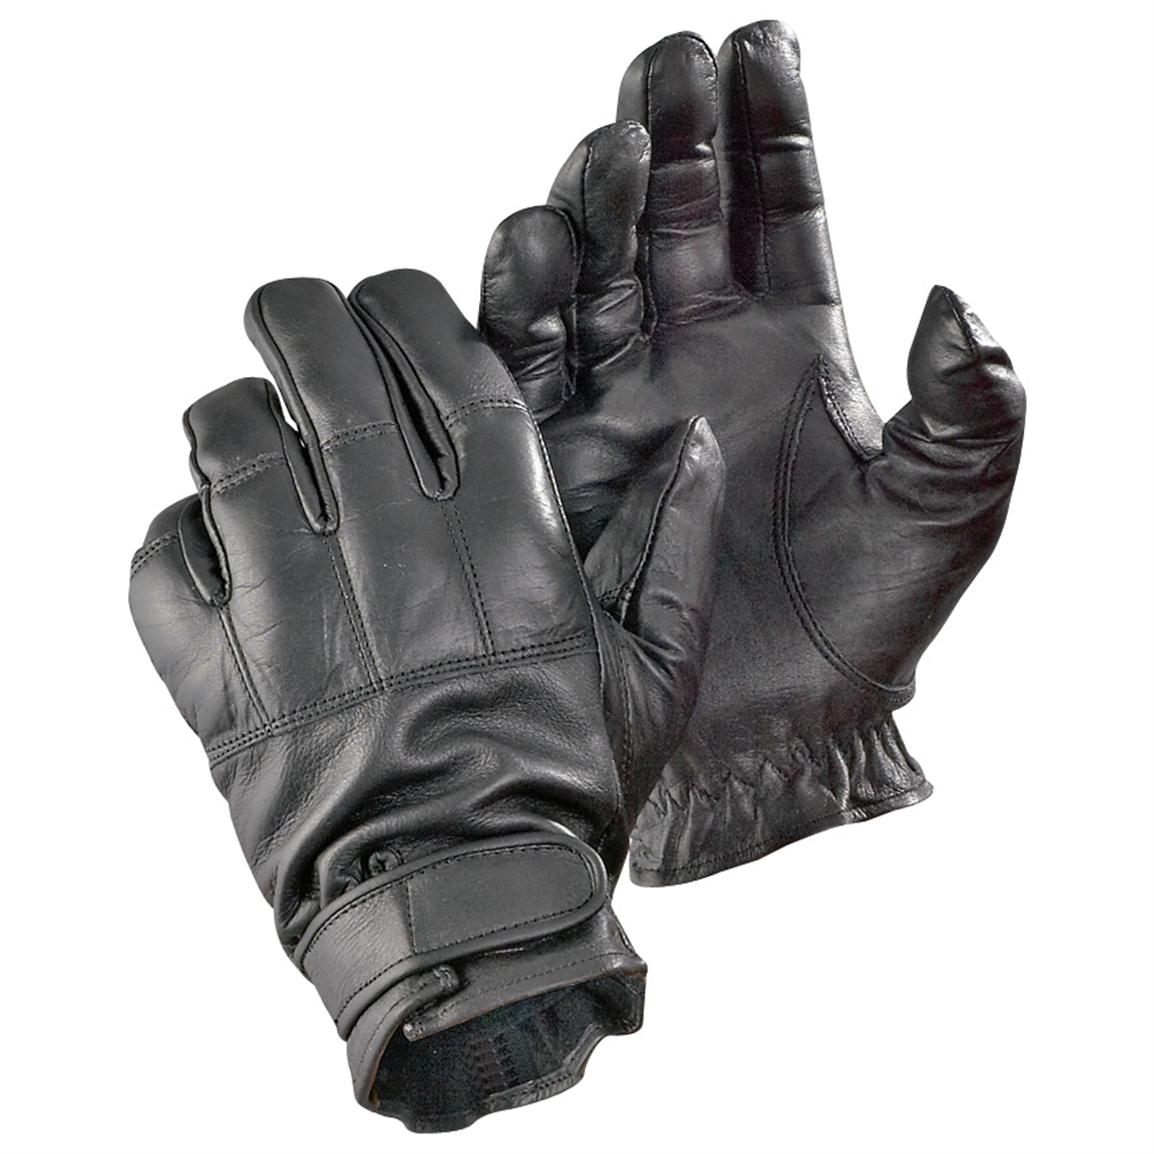 Irregular Sand-filled Leather Knuckle Gloves, Black - 91552, Gloves ...